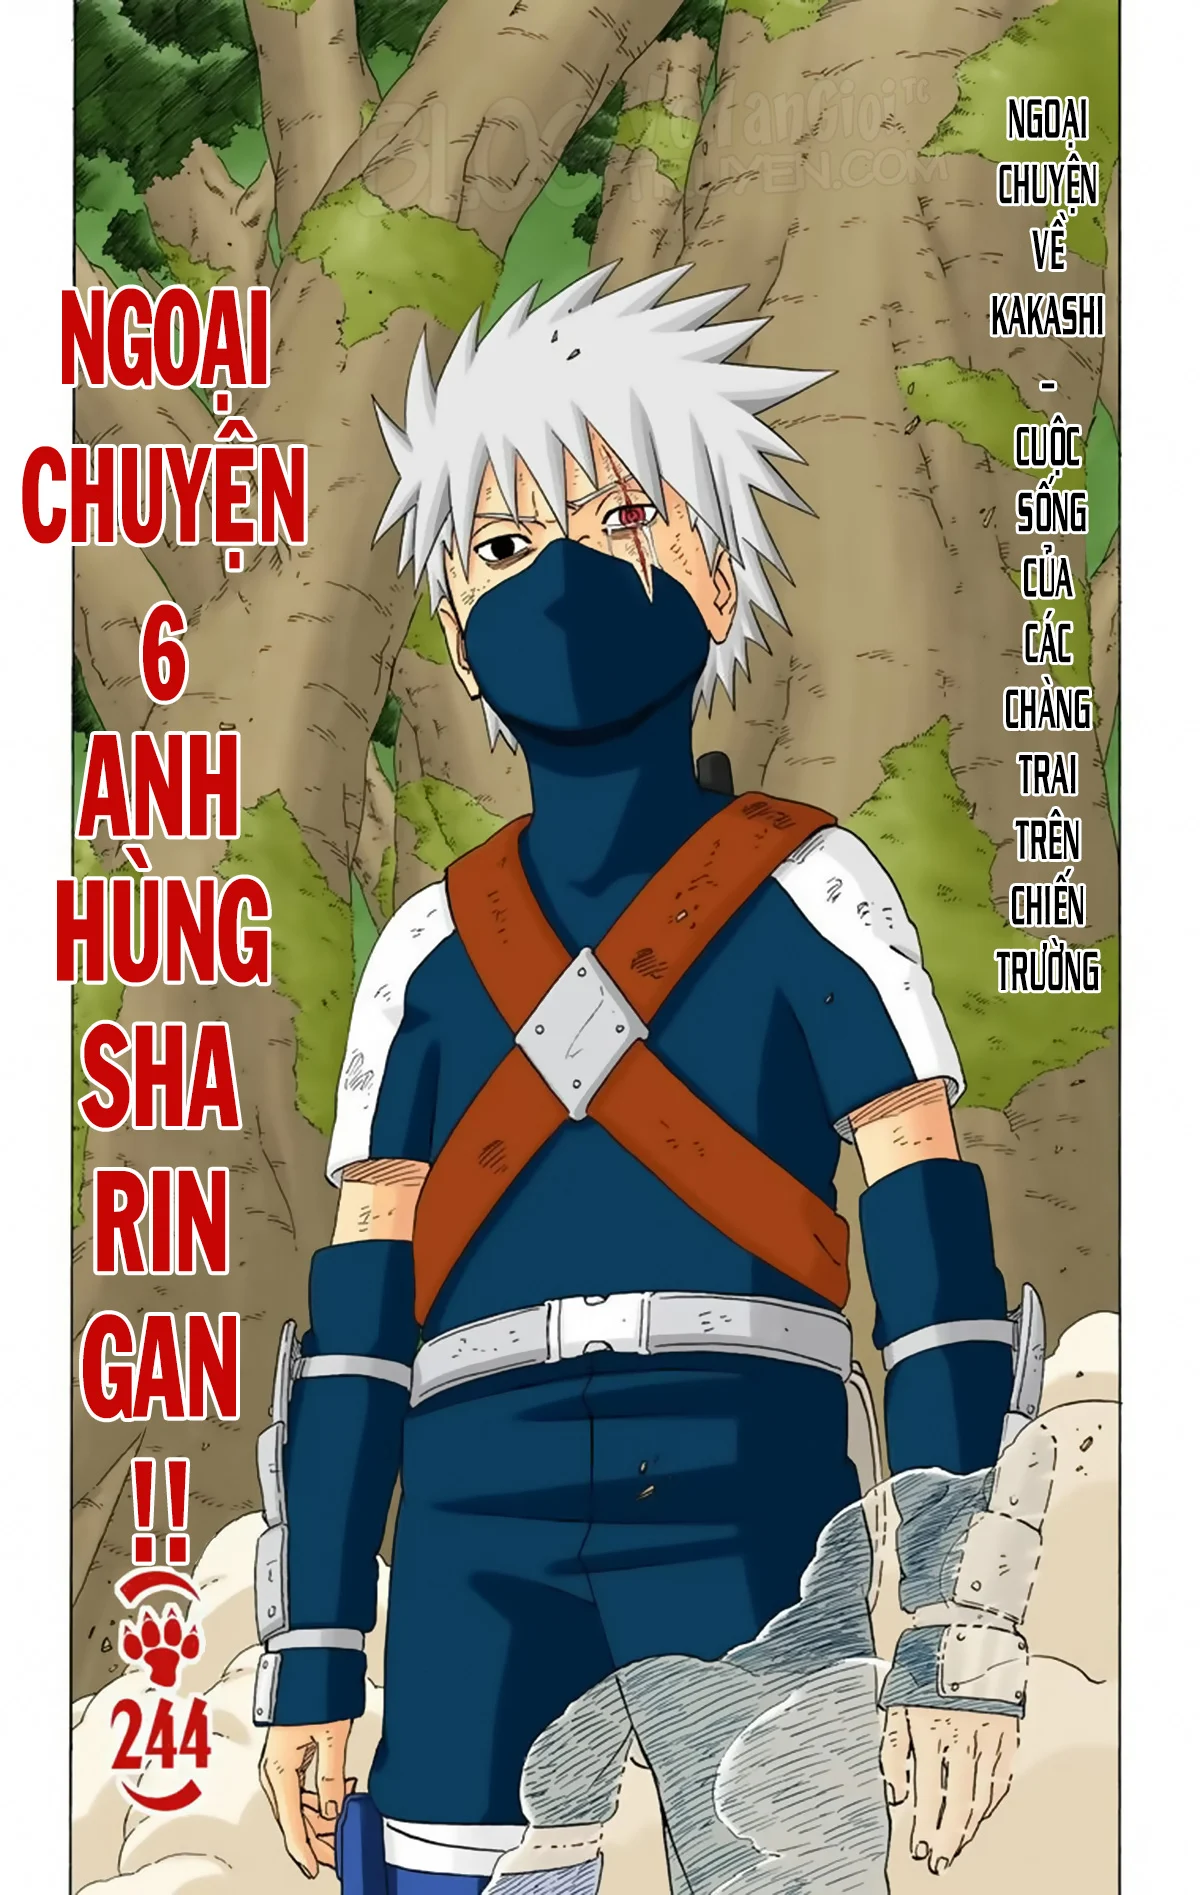 Naruto Full Color Edition Chương 244 Ngo i truy n 5 Anh h ng Sharingan Trang 2